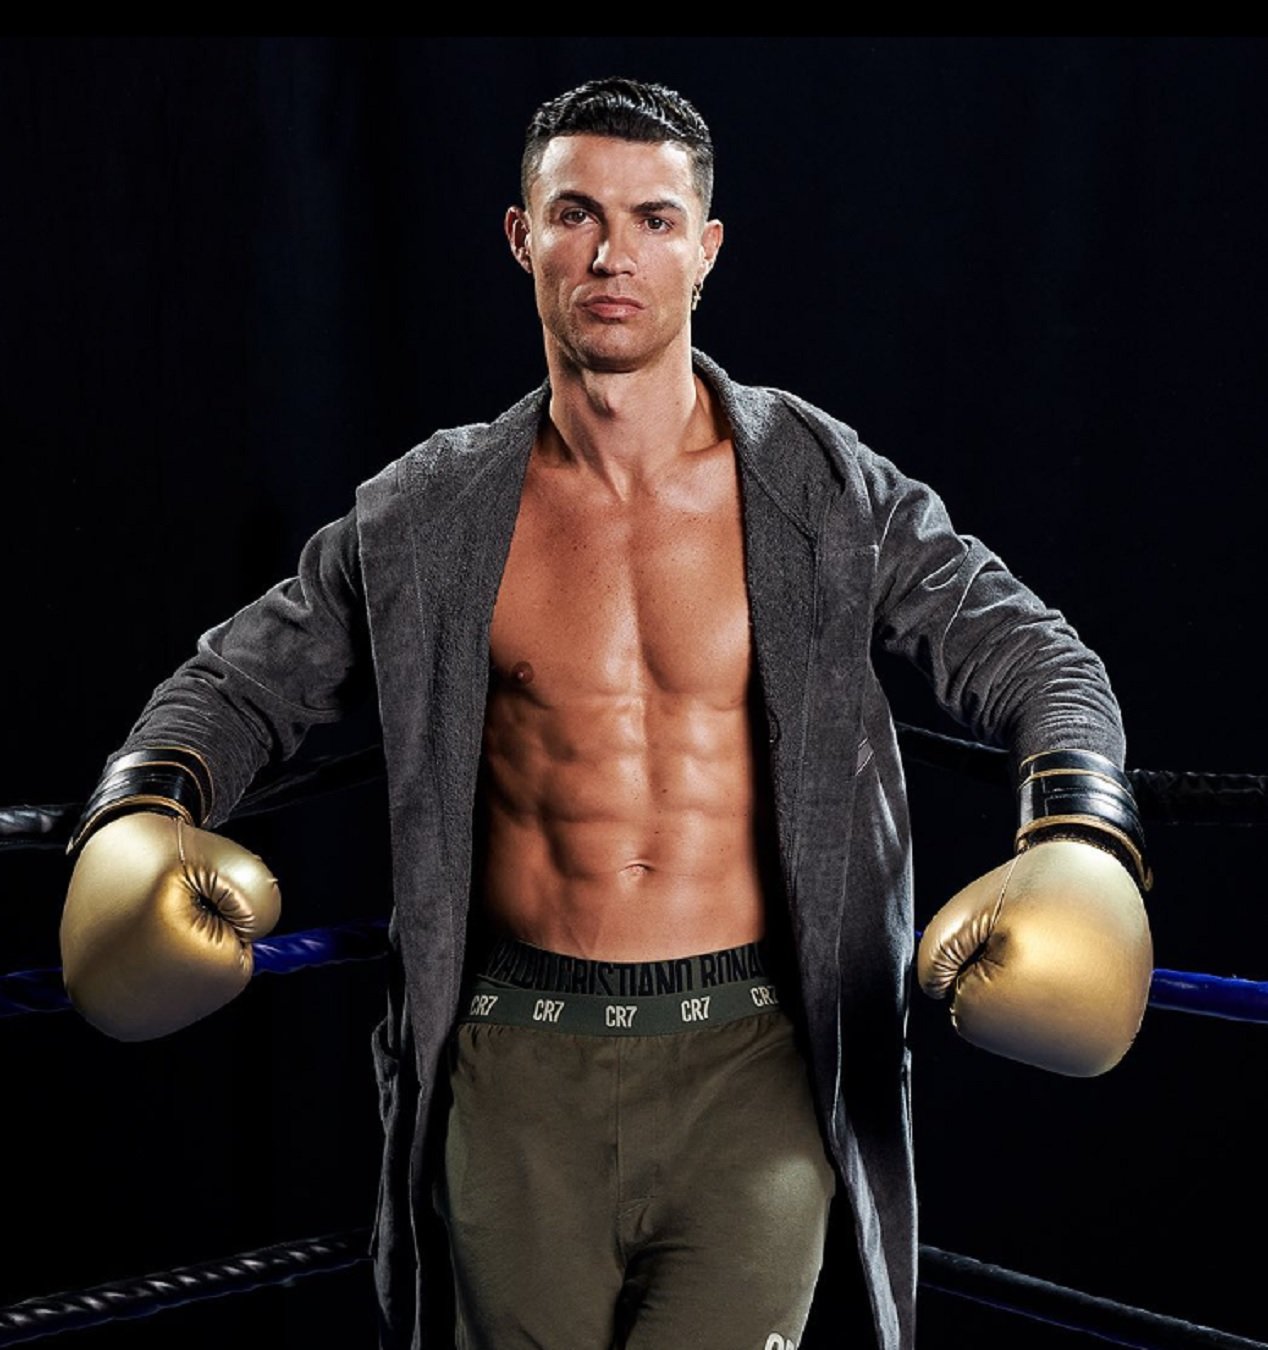 Cristiano Ronaldo, hiper humilde: así son sus cenas más modestas que le permiten lucir esta tableta hiper hot